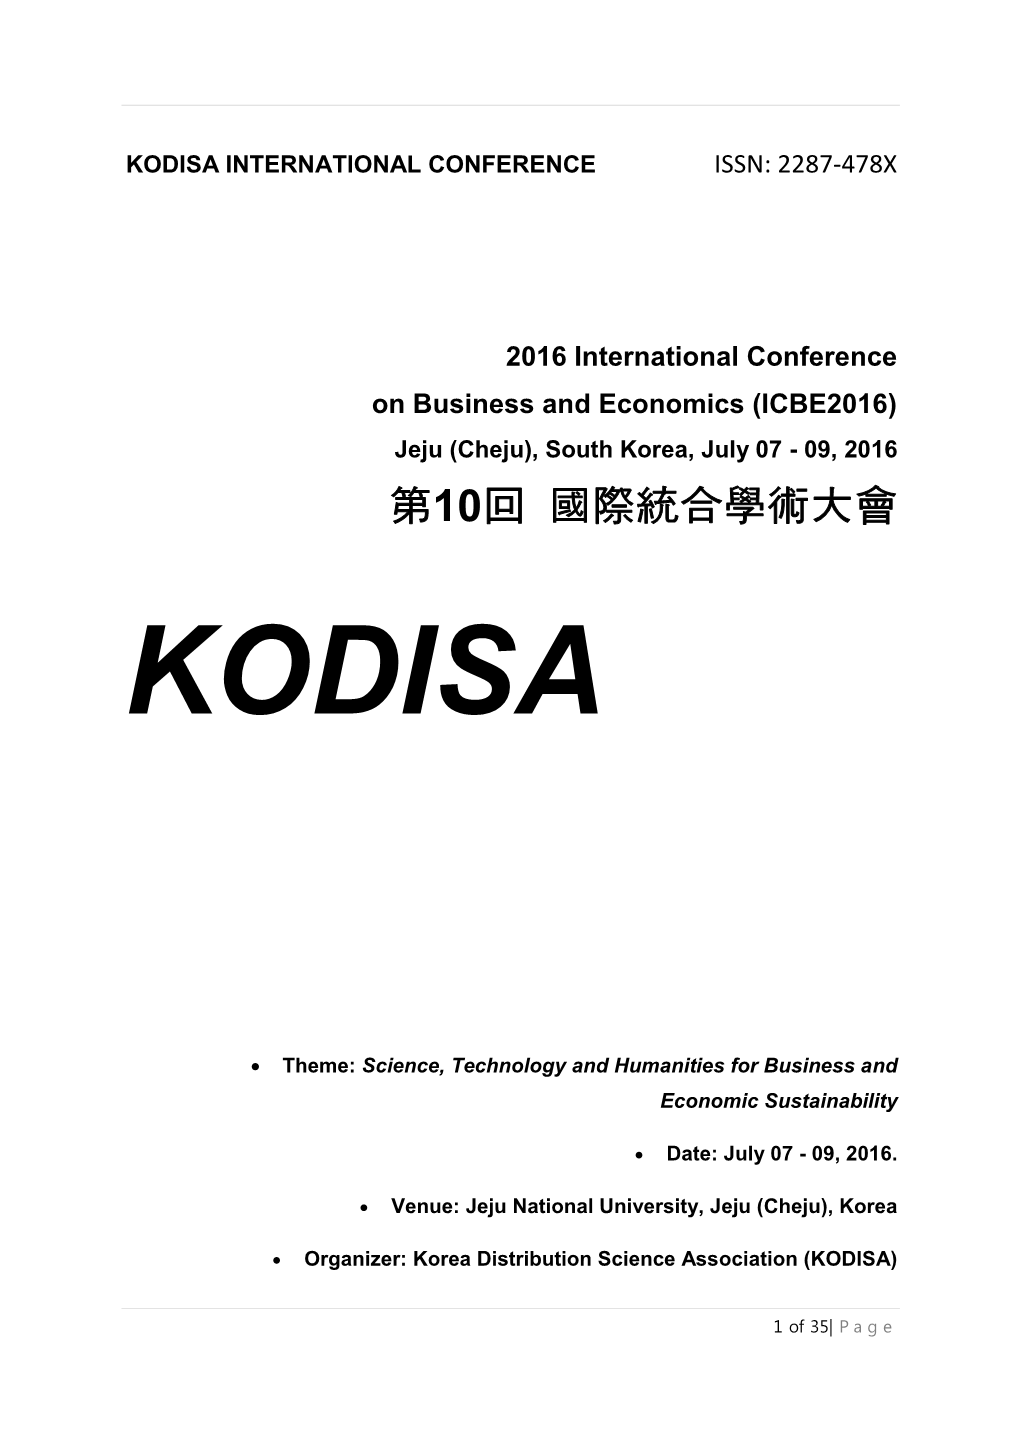 Kodisa International Conference Issn: 2287-478X